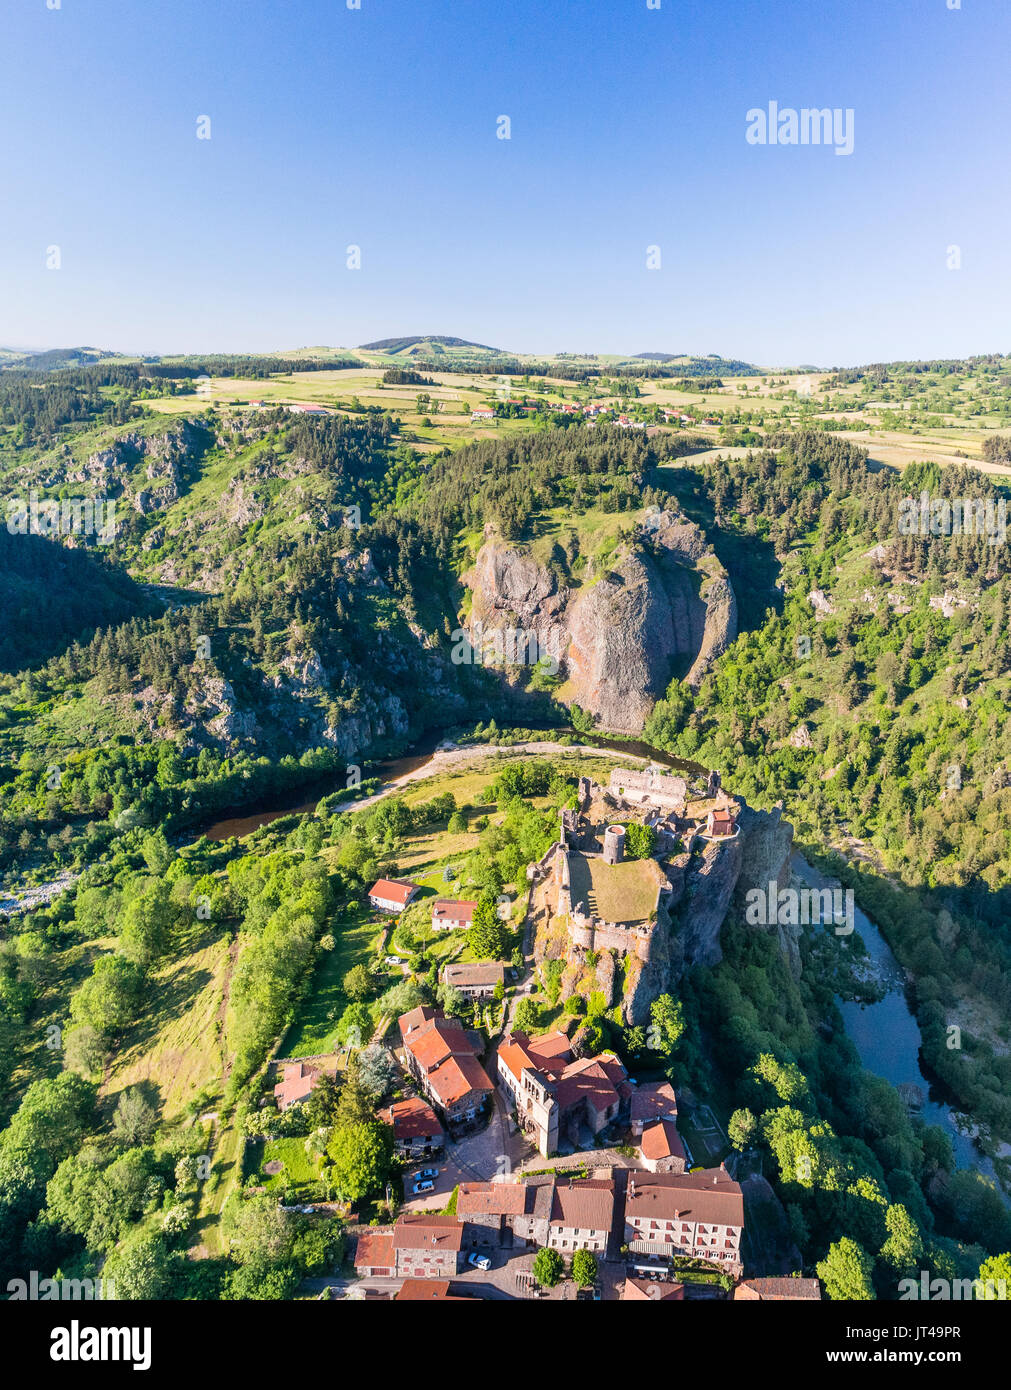 Frankreich, Loire, Loire-Tal, Arlempdes, beschriftet Les Plus beaux villages de France (Schönste Dörfer Frankreichs) (Luftbild) Stockfoto